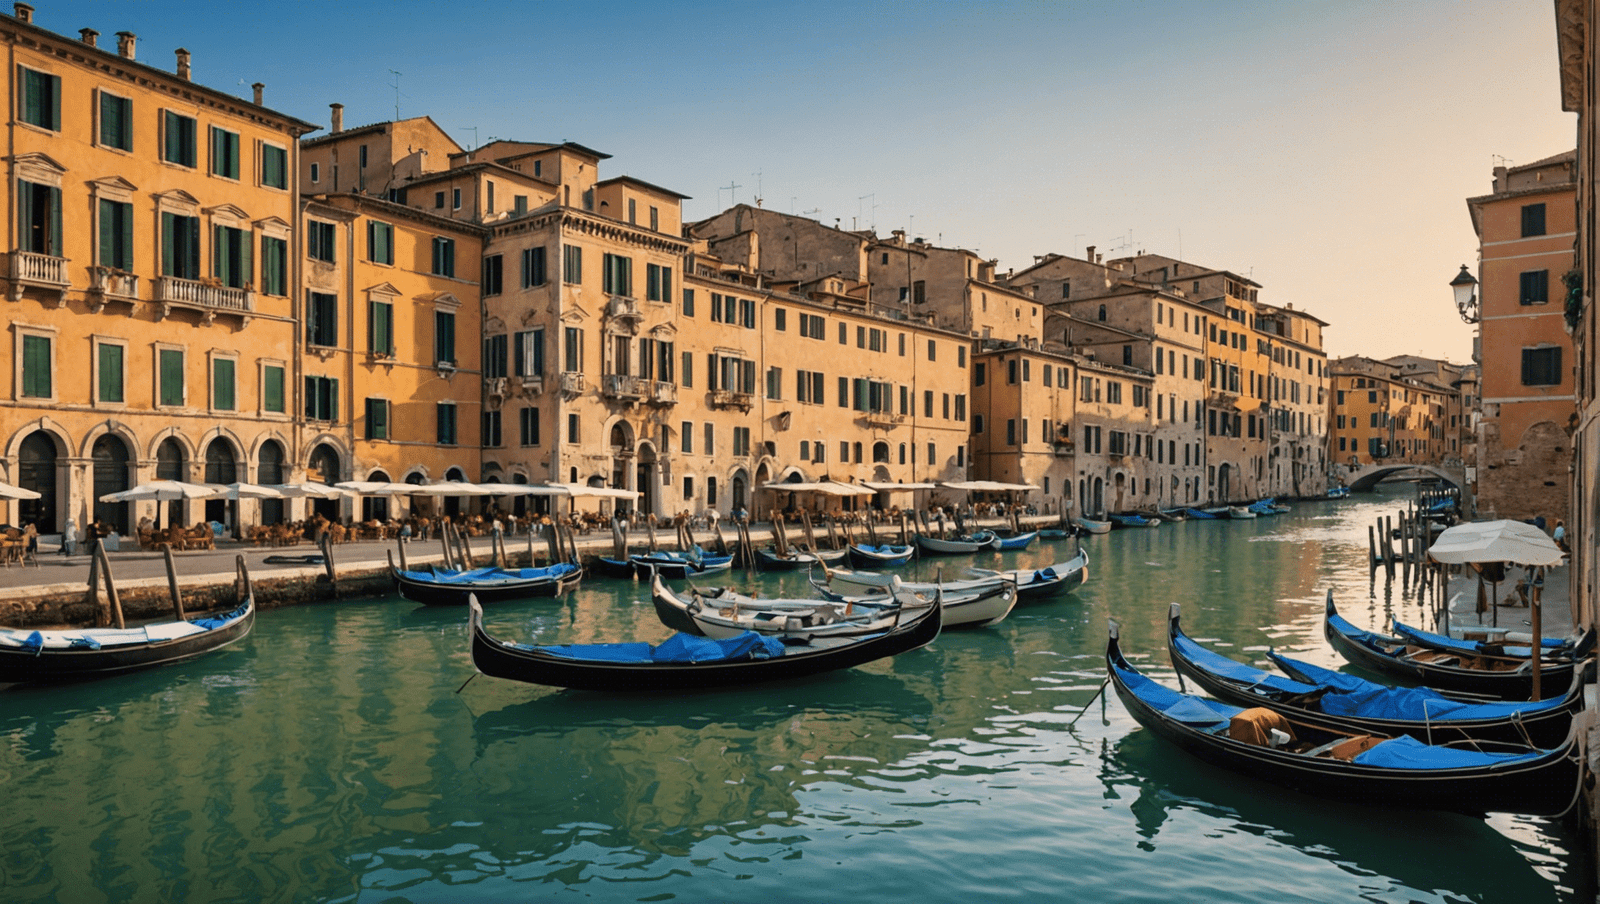 découvrez les plus beaux trésors de l'italie avec notre guide de voyage : des villes pittoresques aux paysages époustouflants, plongez au cœur de la bella italia.